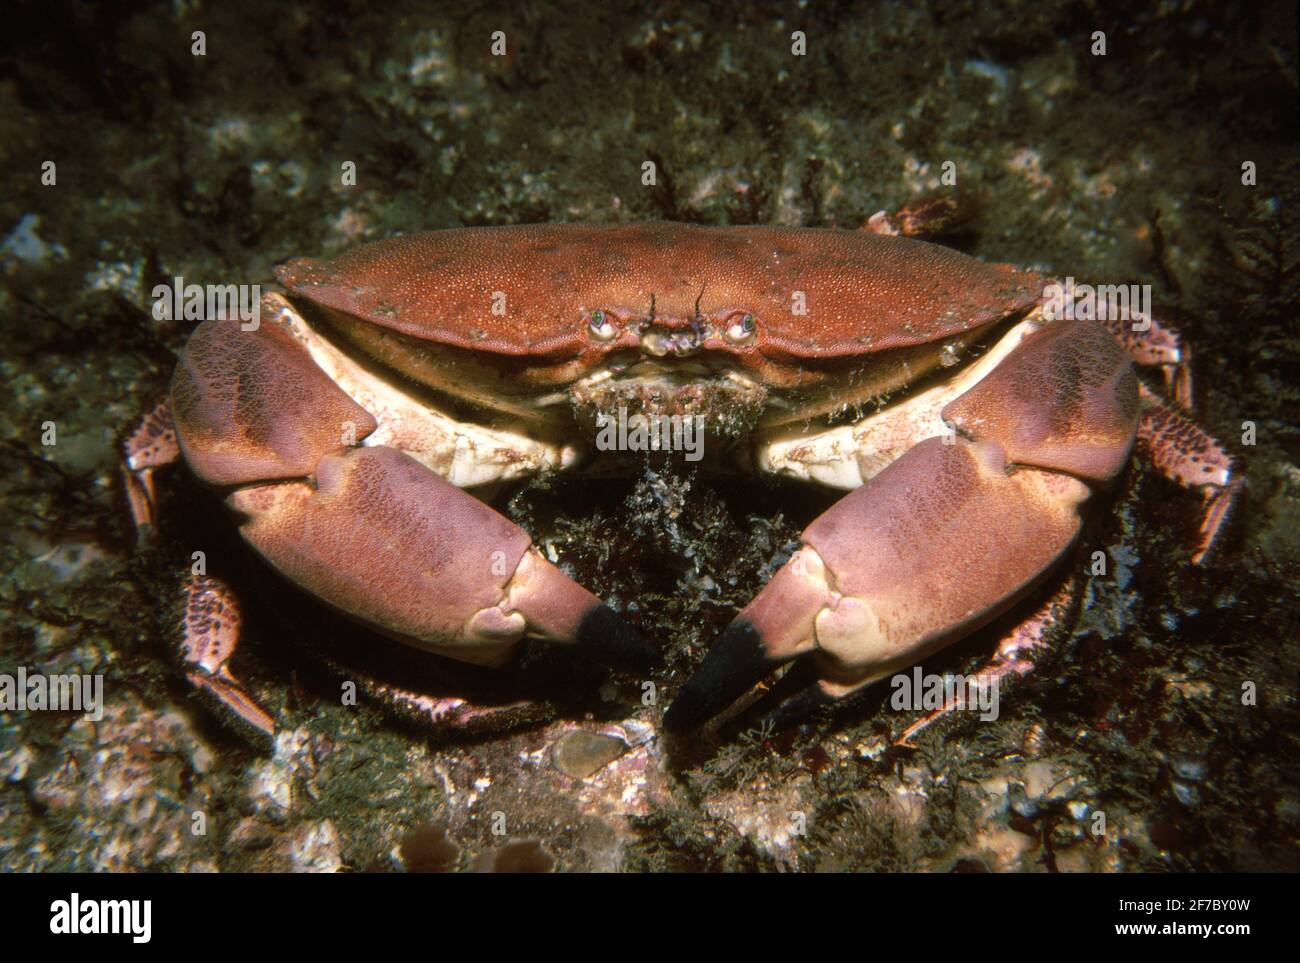 Crabe comestible (cancer pagurus) sur un fond rocheux, Royaume-Uni. Banque D'Images